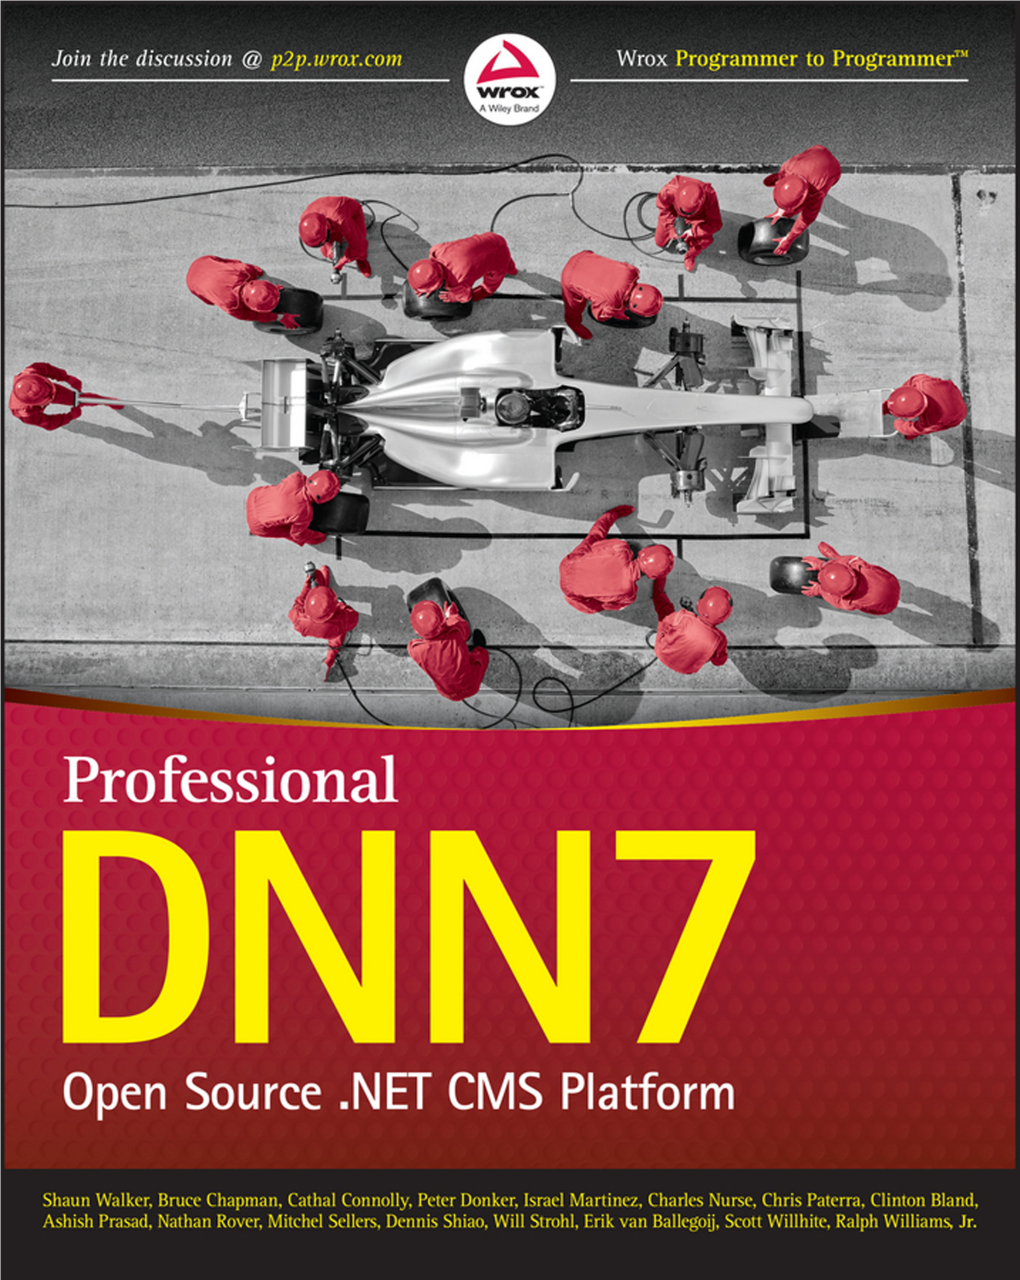 Professional Dnn7 Open Source .Net Cms Platform